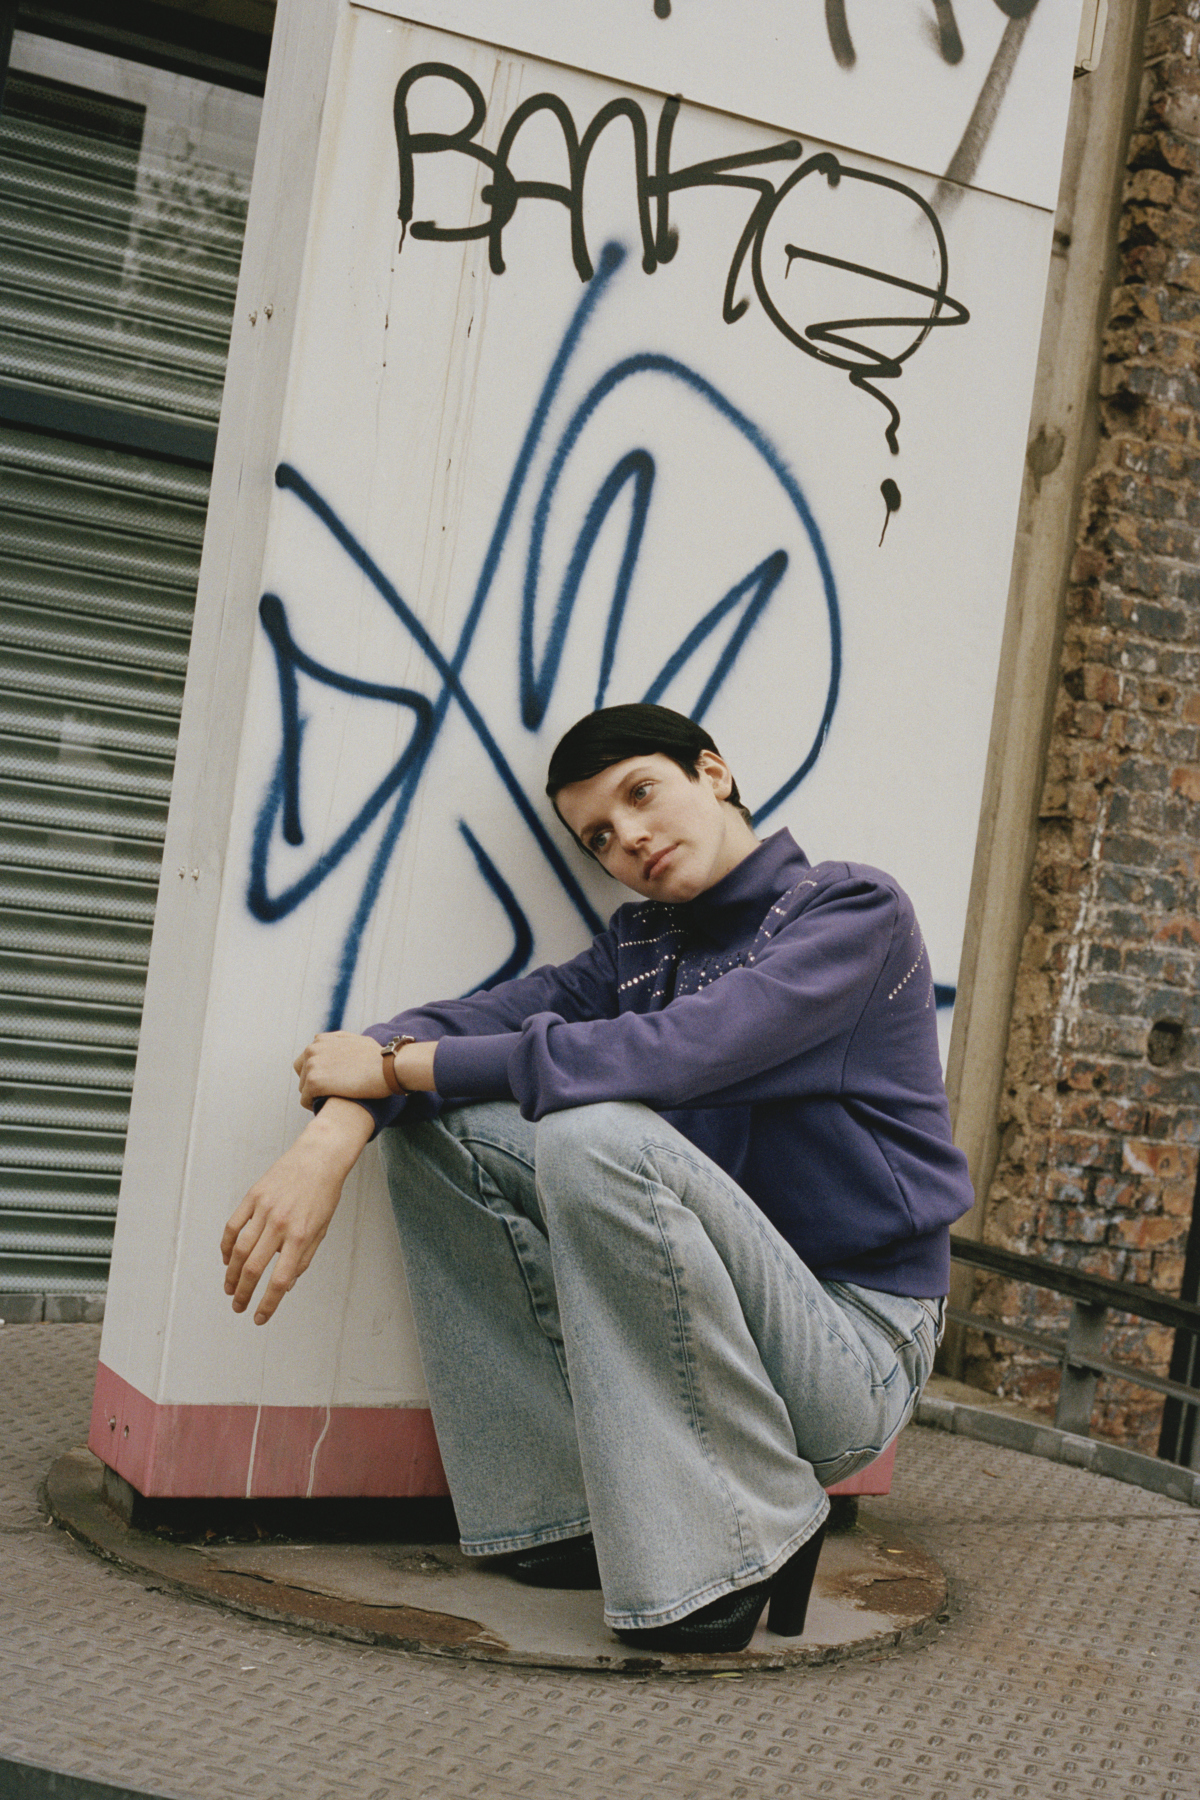 Model Yuki van Gog squatting in front of a graffiti in a purple jumper